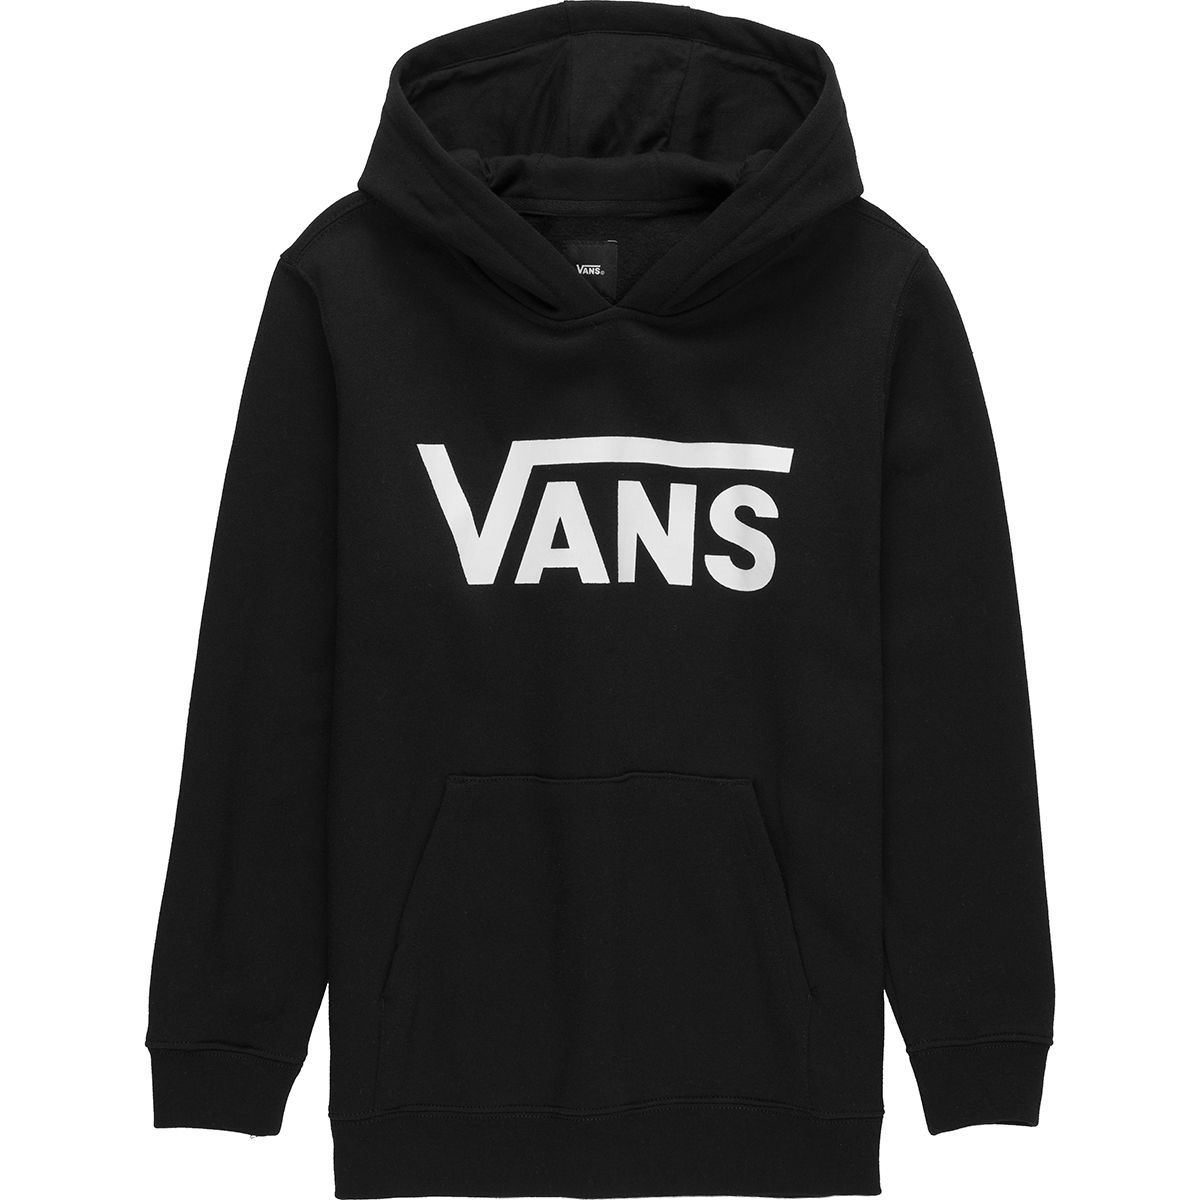 black vans sweatshirt